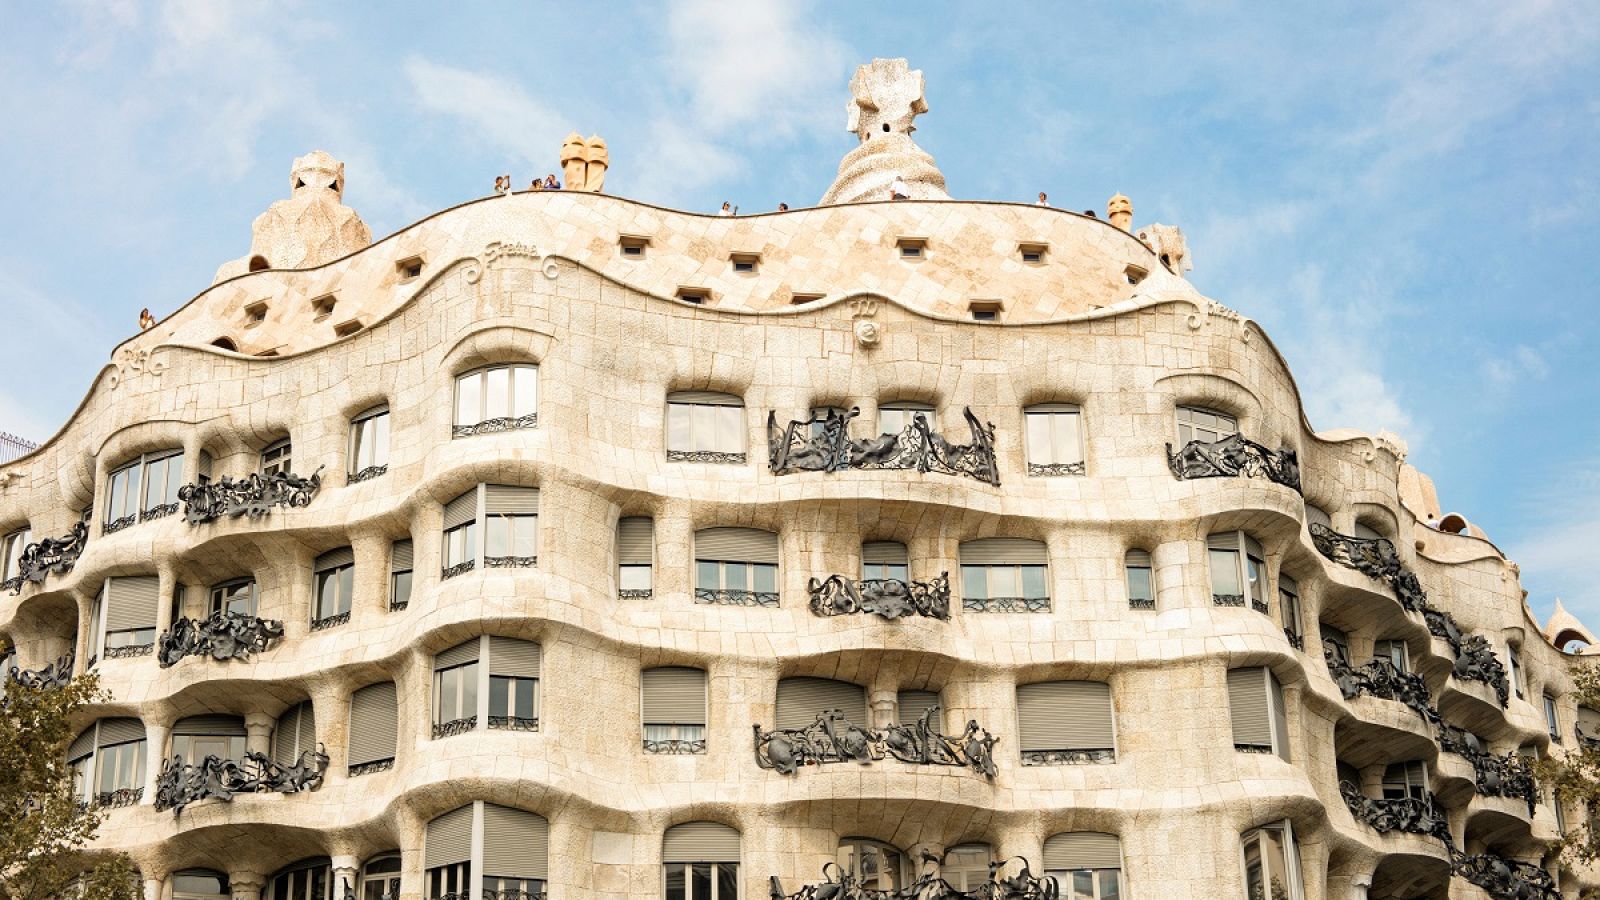 Por qué criticaron La de Gaudí cuando se construyó?